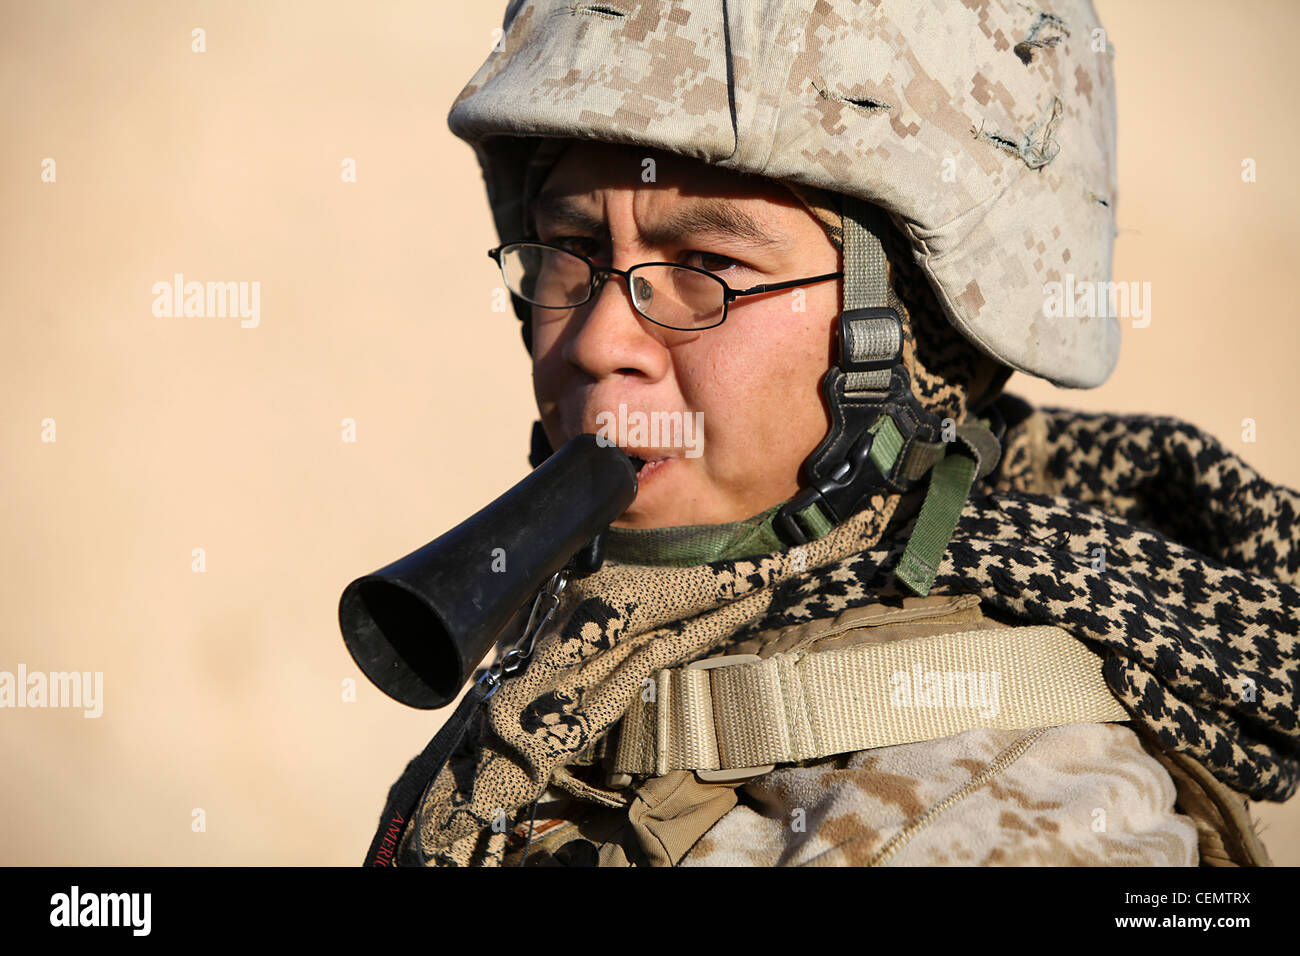 Cpl. Casey Chang, 21, Hundeführer, Detroit, mich., benutzt eine Pfeife, um Tank Befehle zu geben. Tank ist ein militärischer Arbeitshund, der trainiert ist, um militärische und hausgemachte Sprengstoffe zu erkennen. Chang, dem 2. Bataillon, 4. Marines, zugewiesen, absolvierte einen 6-wöchigen Trainingskurs, um die Bedürfnisse und das Training für seinen Hund zu verstehen. Stockfoto